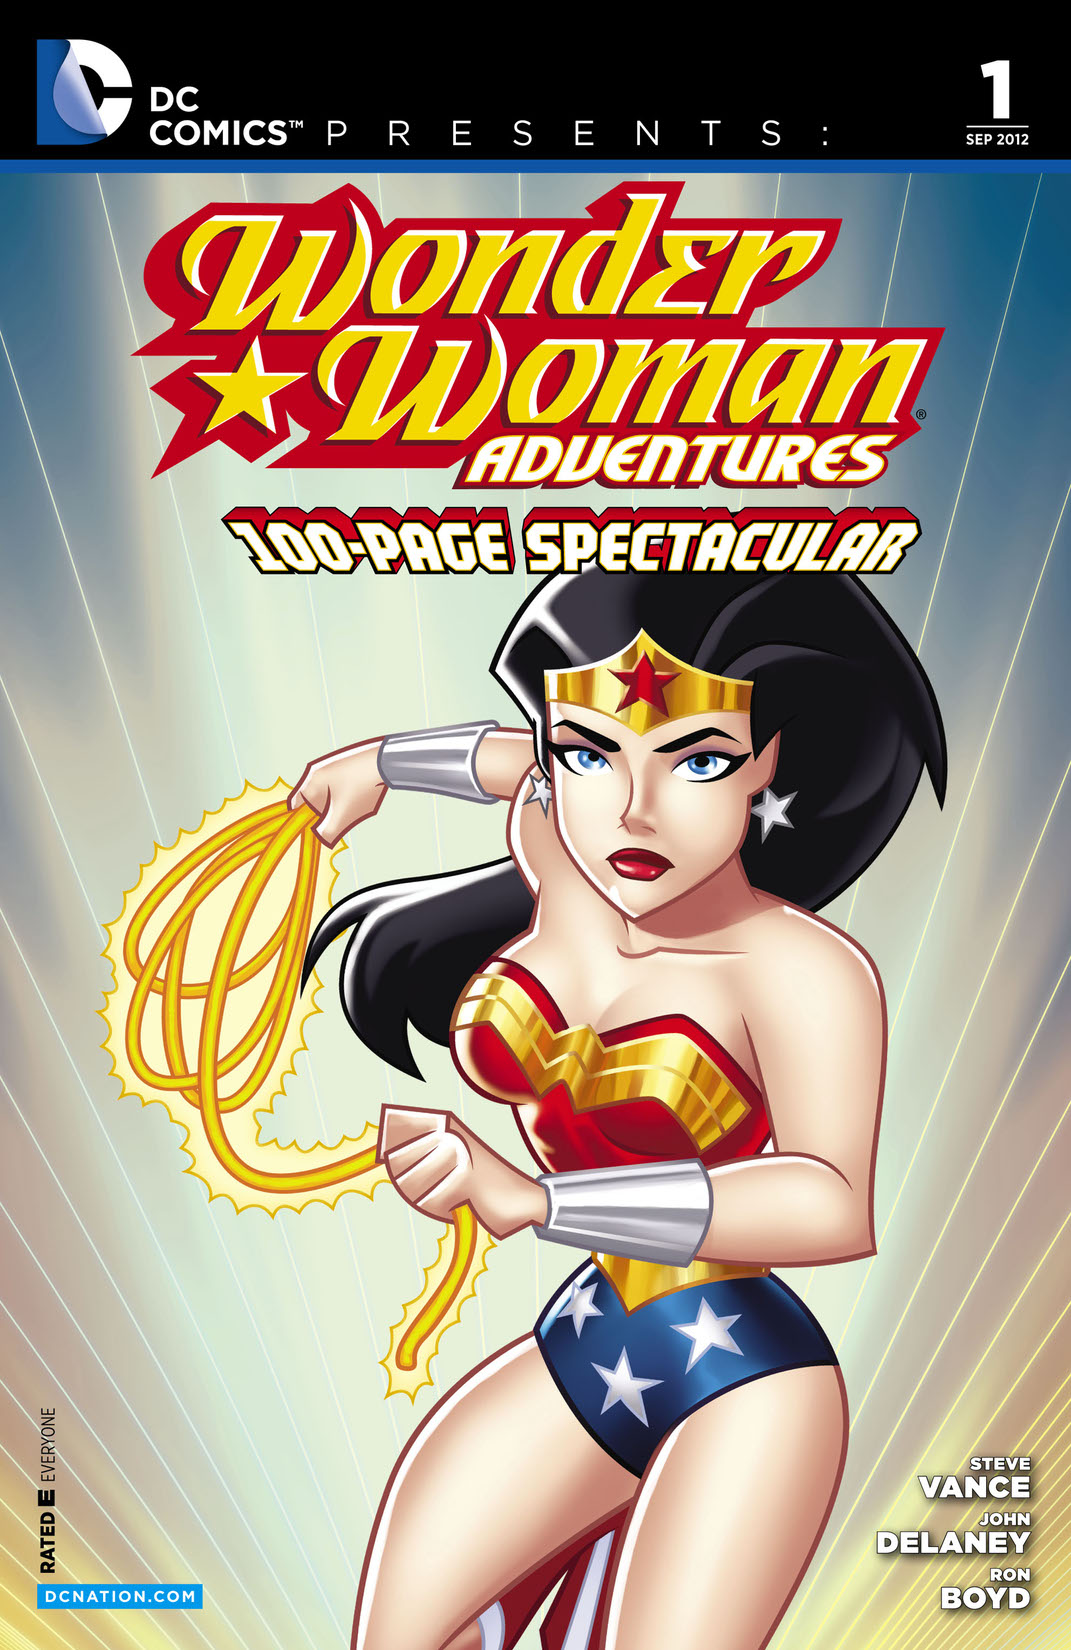 DC Comics Presents: Wonder Woman Adventures #1 (2012-) #1 preview images